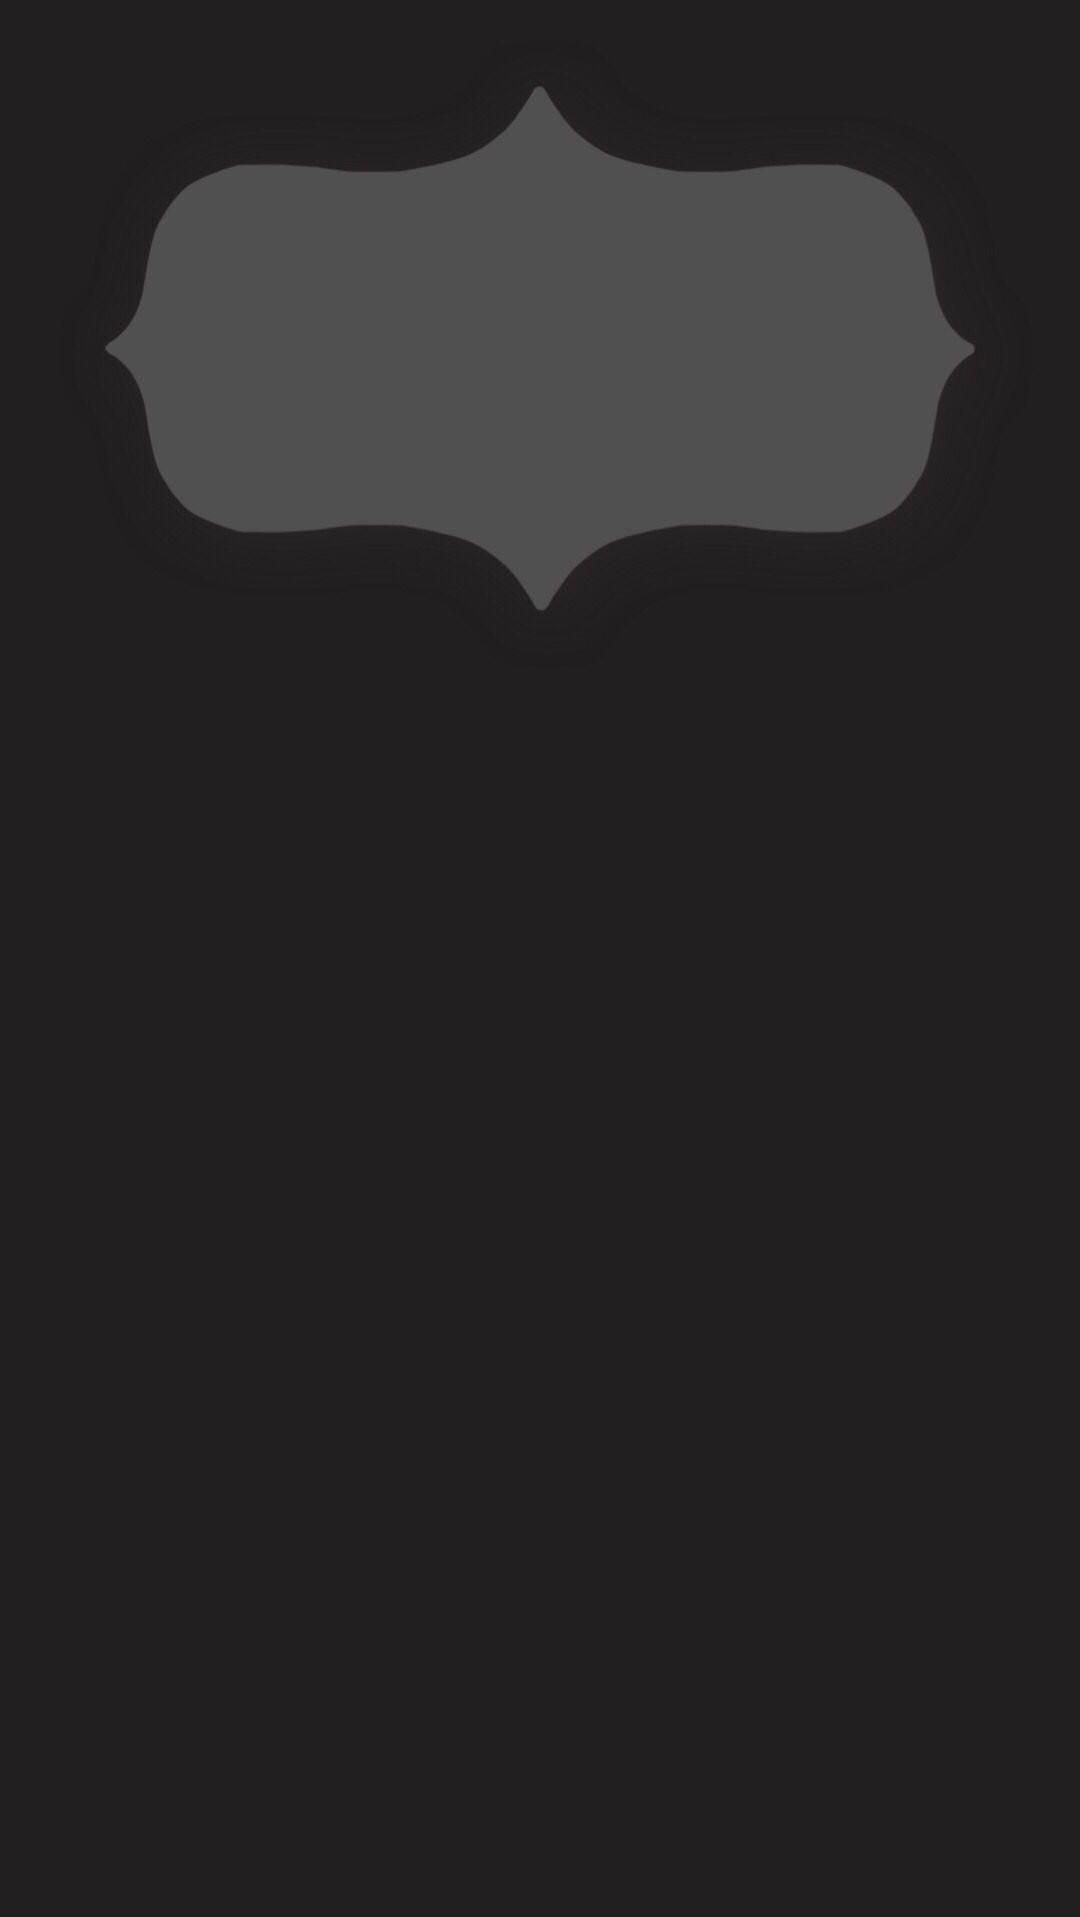 iPhone 6 Plus lock screen wallpaper. Minimal dark gray design